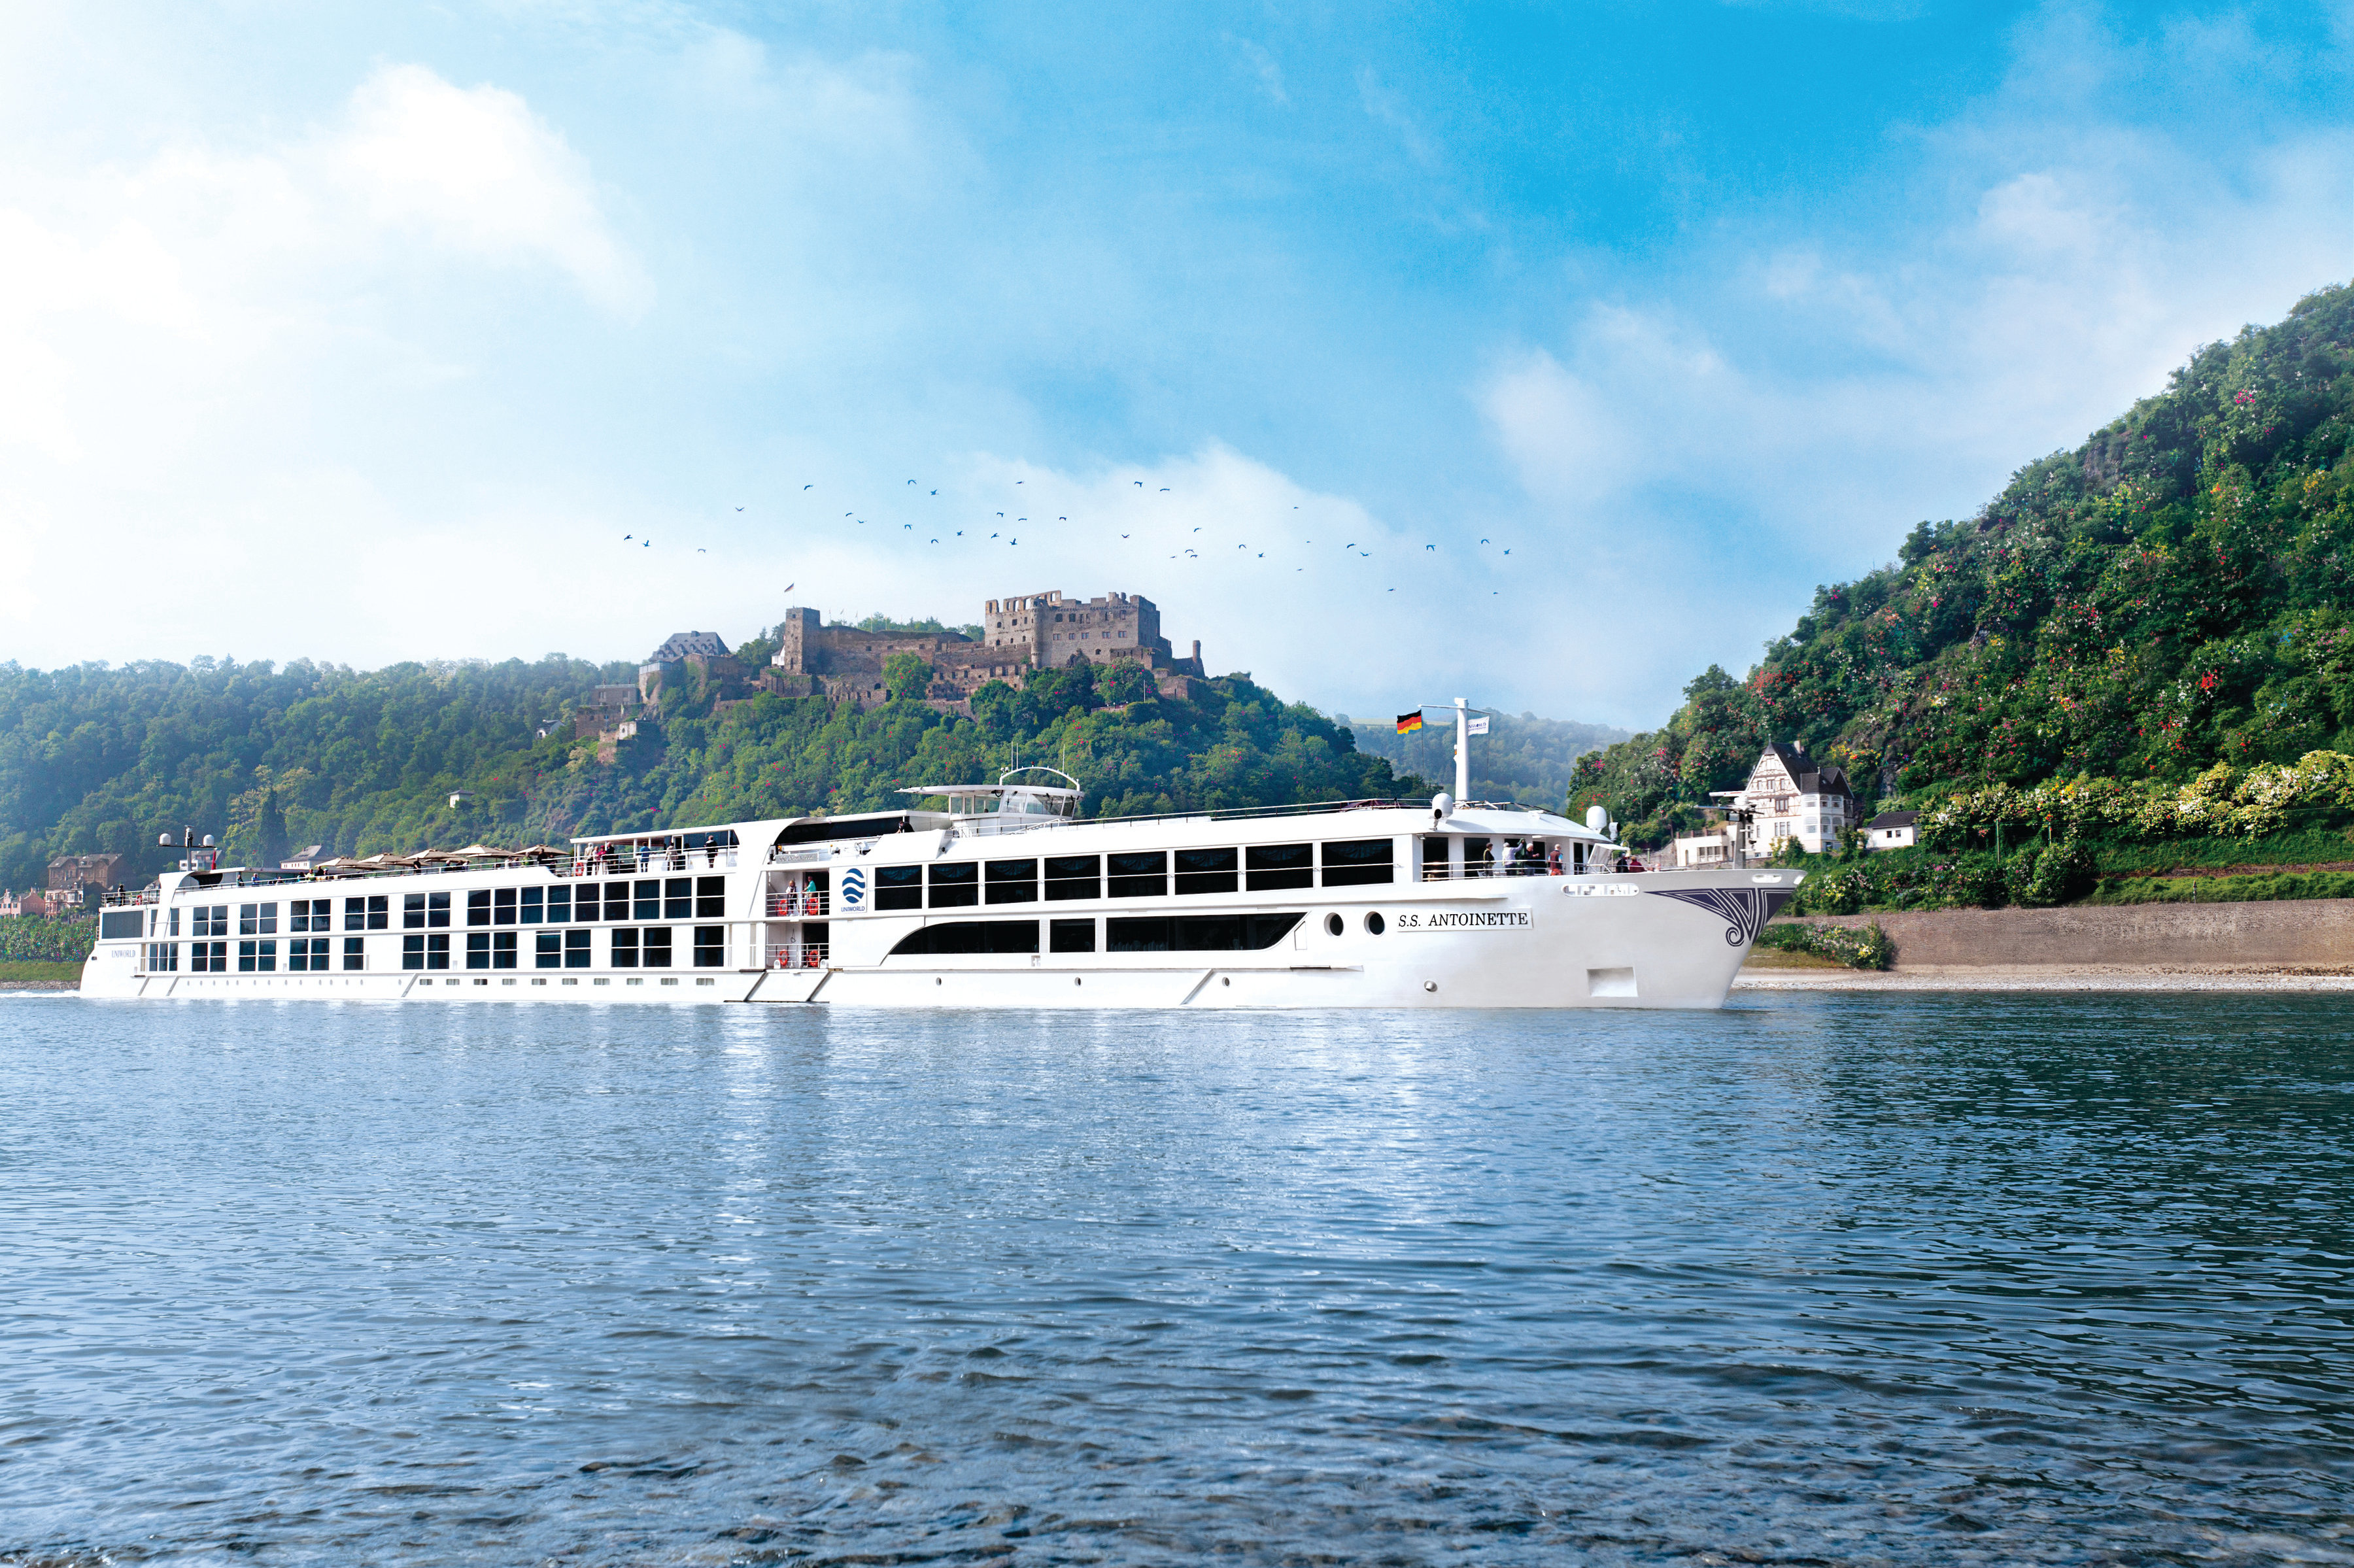 Uniworld - S.S. Antoinette on the Rhine